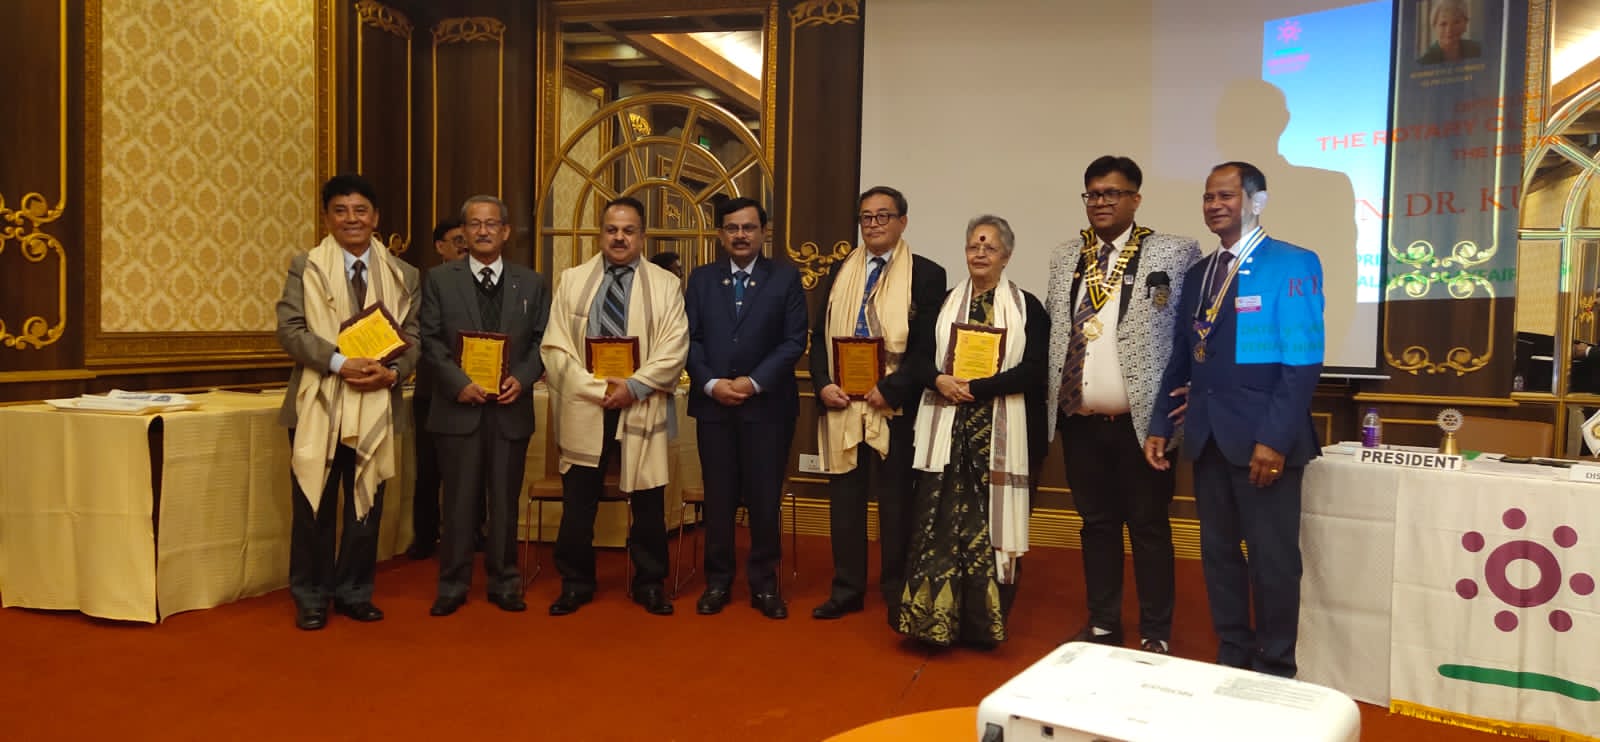 Felicitation of Senior Rotarians